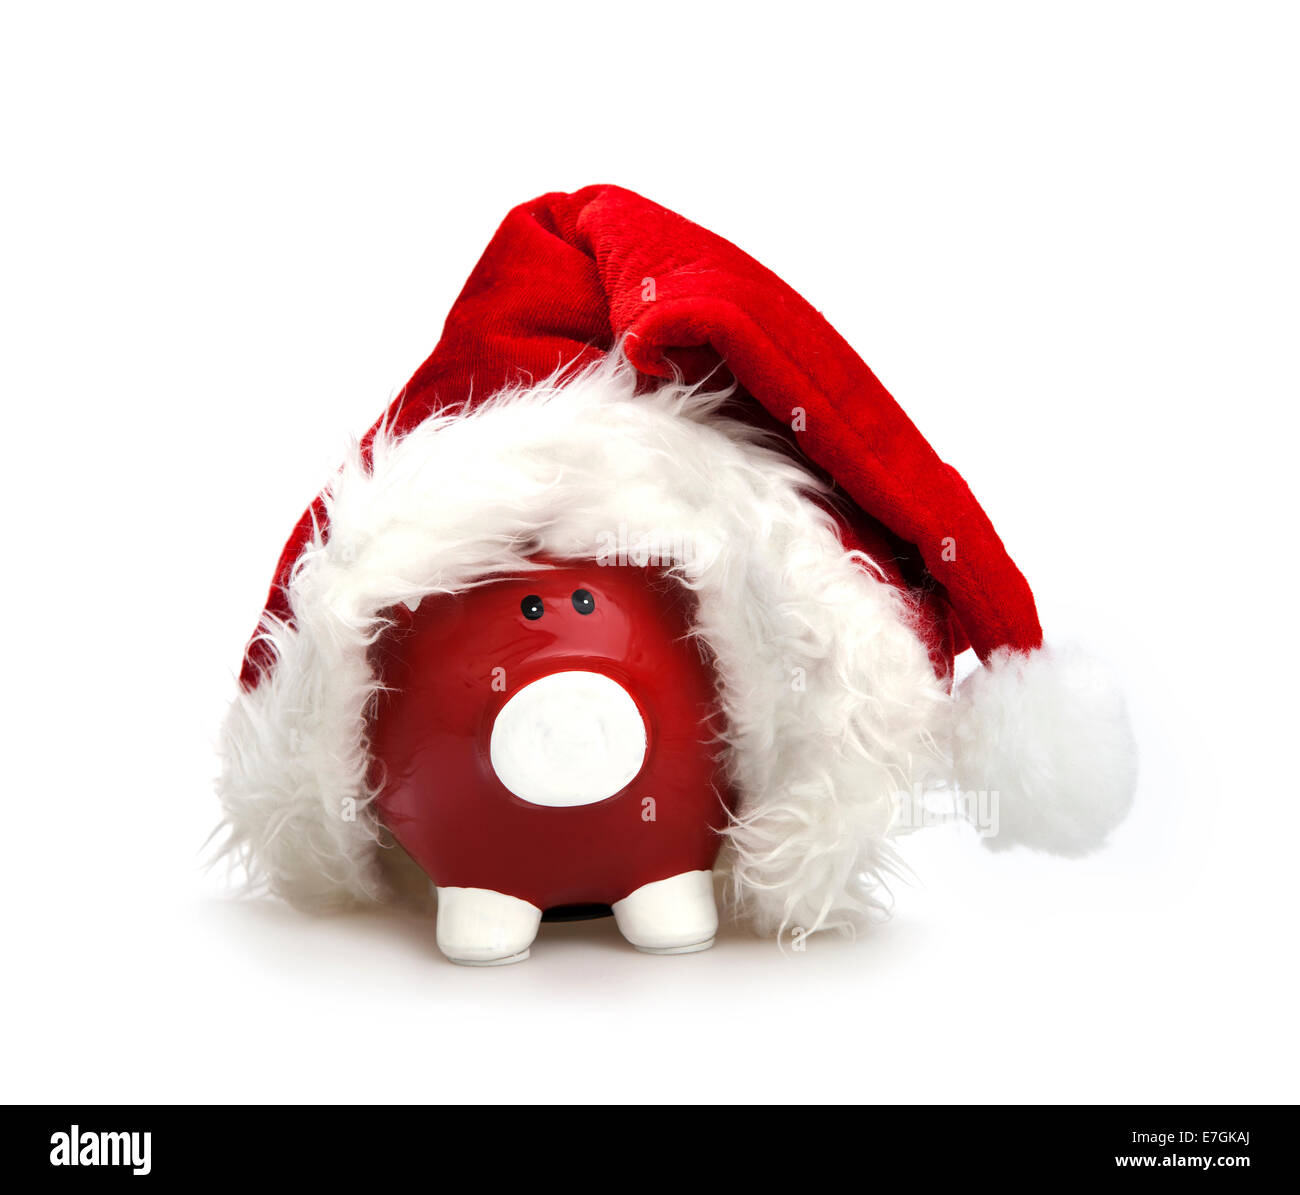 Weihnachten-Sparschwein auf dem weißen Hintergrund Stockfoto